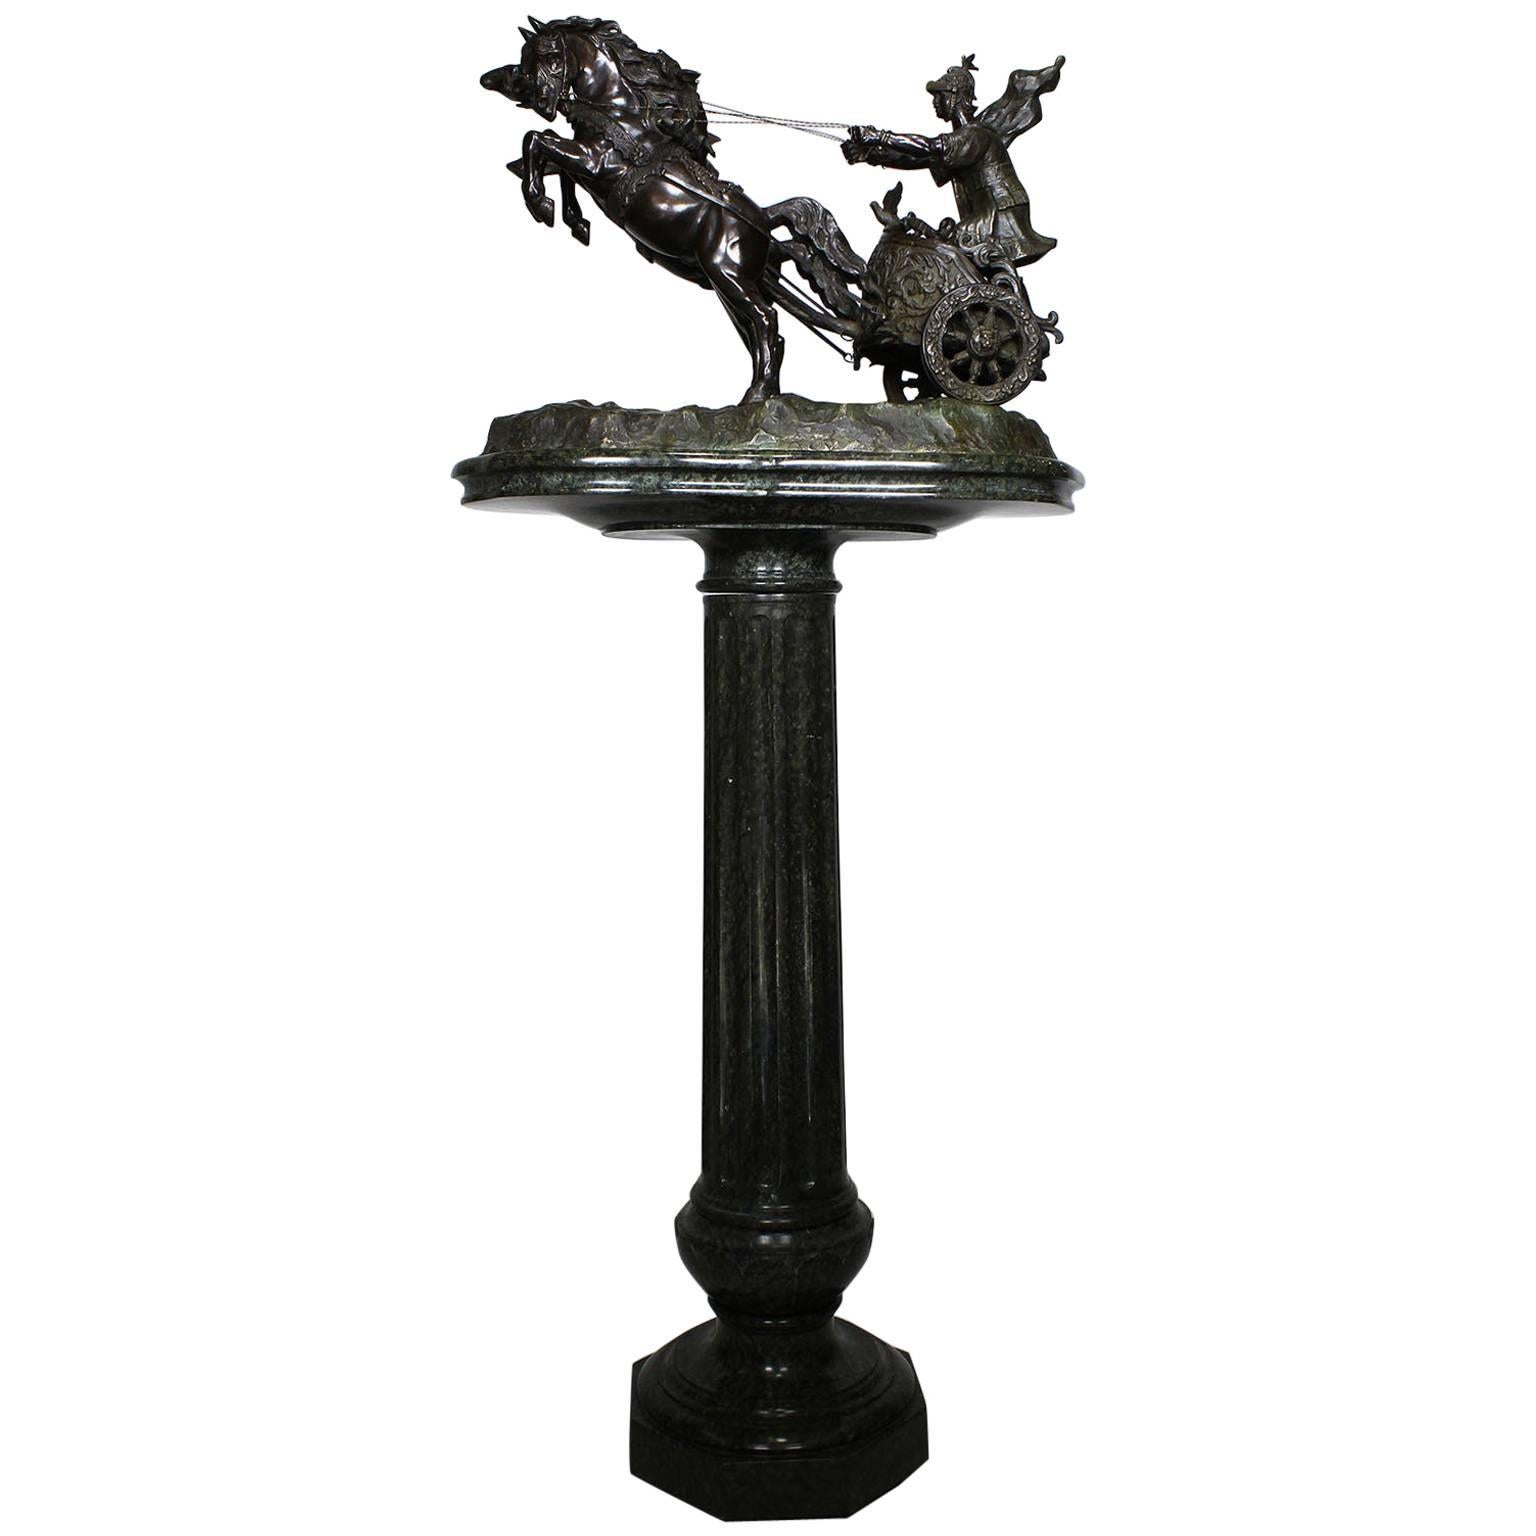 Groupe de sculptures italiennes en bronze du 19ème siècle représentant un char et un cavalier romain à deux chevaux